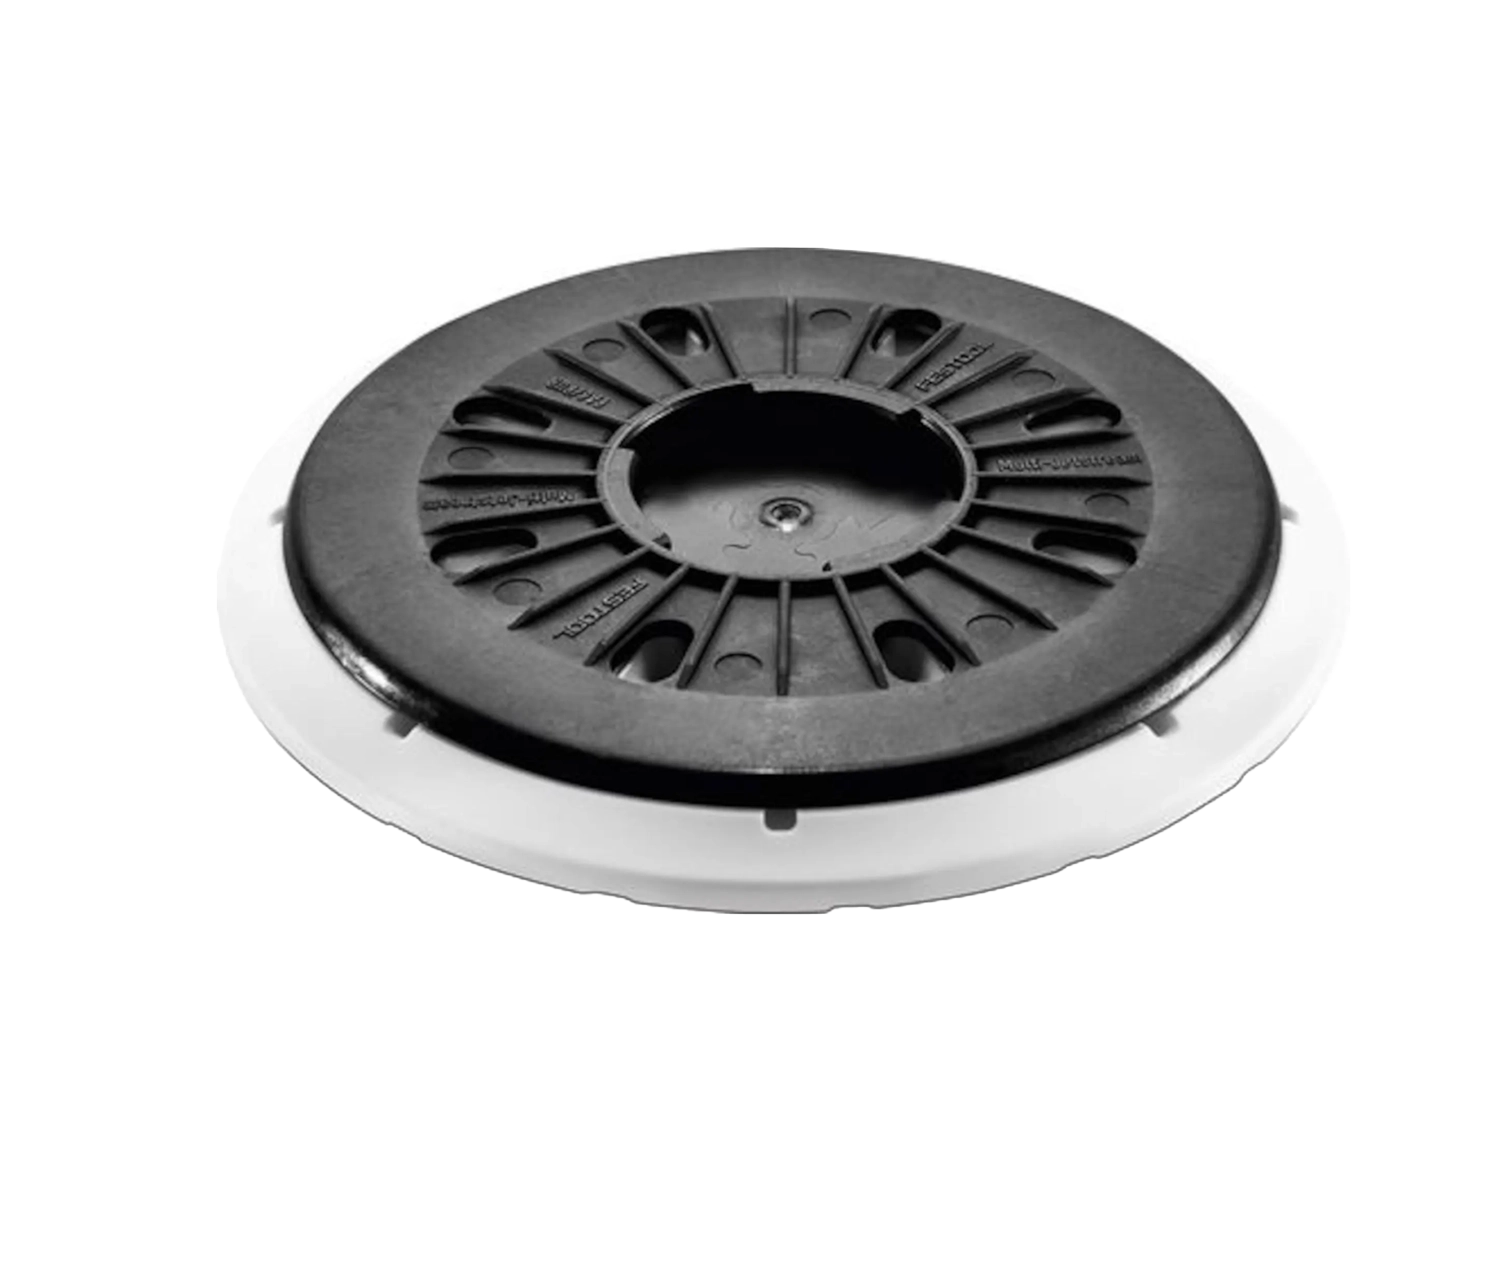 Ronde schuurschijf van Festool met zwarte geribbelde plaat en schroefgat in het midden,  er zitten gaten in een cirkel rond het middelpunt.